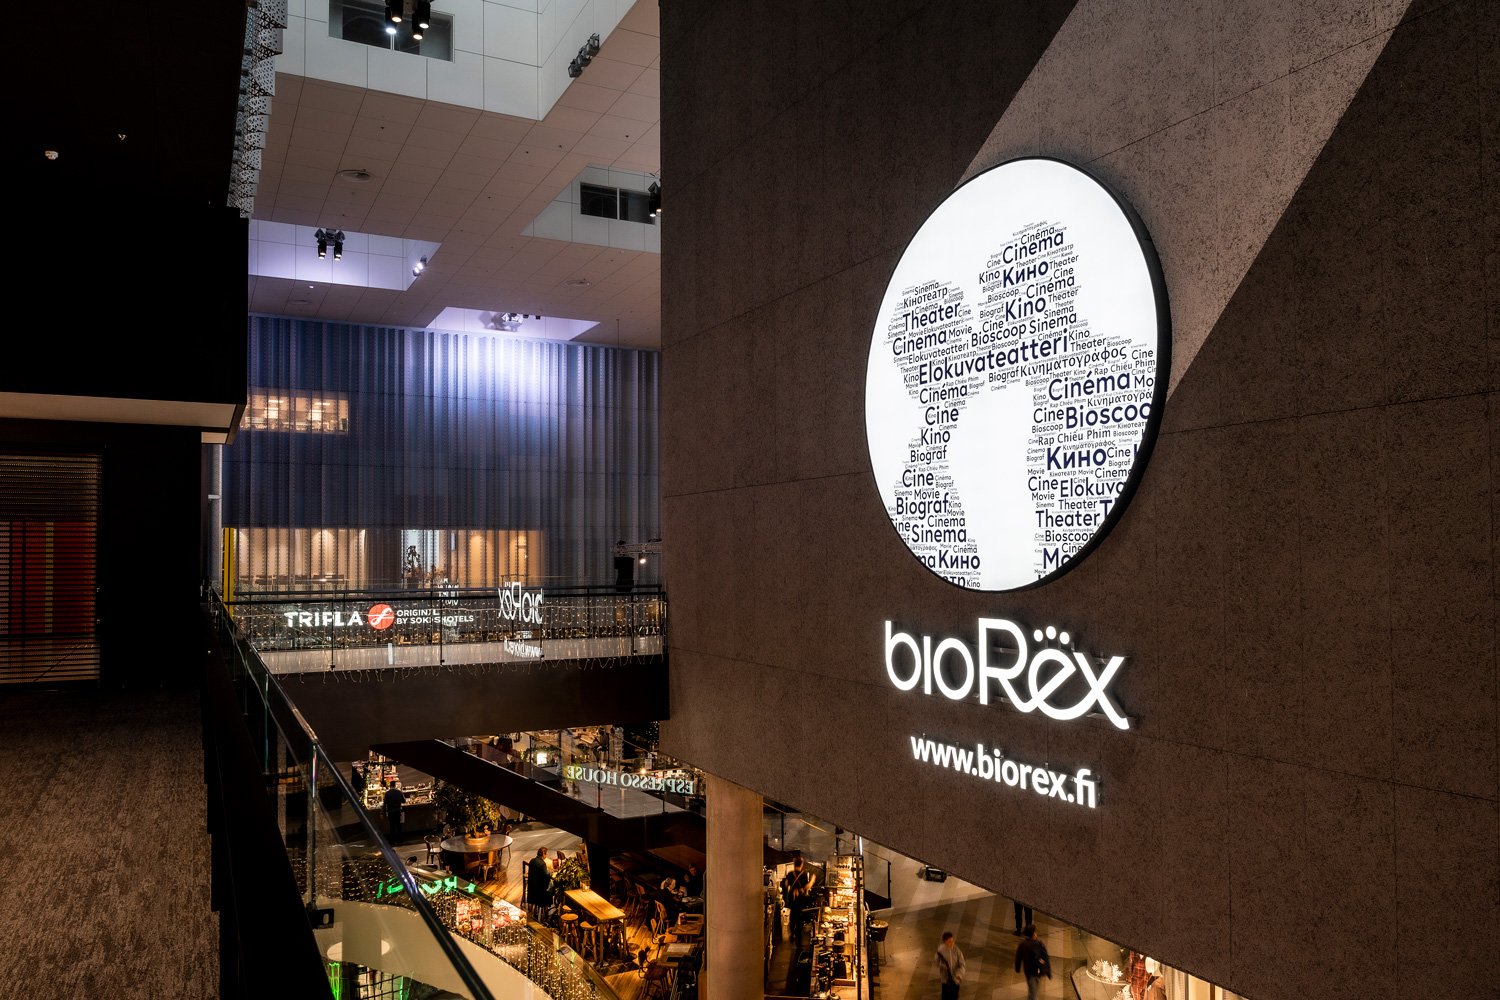 BioRexillä on Suomessa elokuvateattereita 11 eri paikkakunnalla. Grano toteuttaa heille valomainoksia ympäri Suomea, sekä sisälle että ulos.